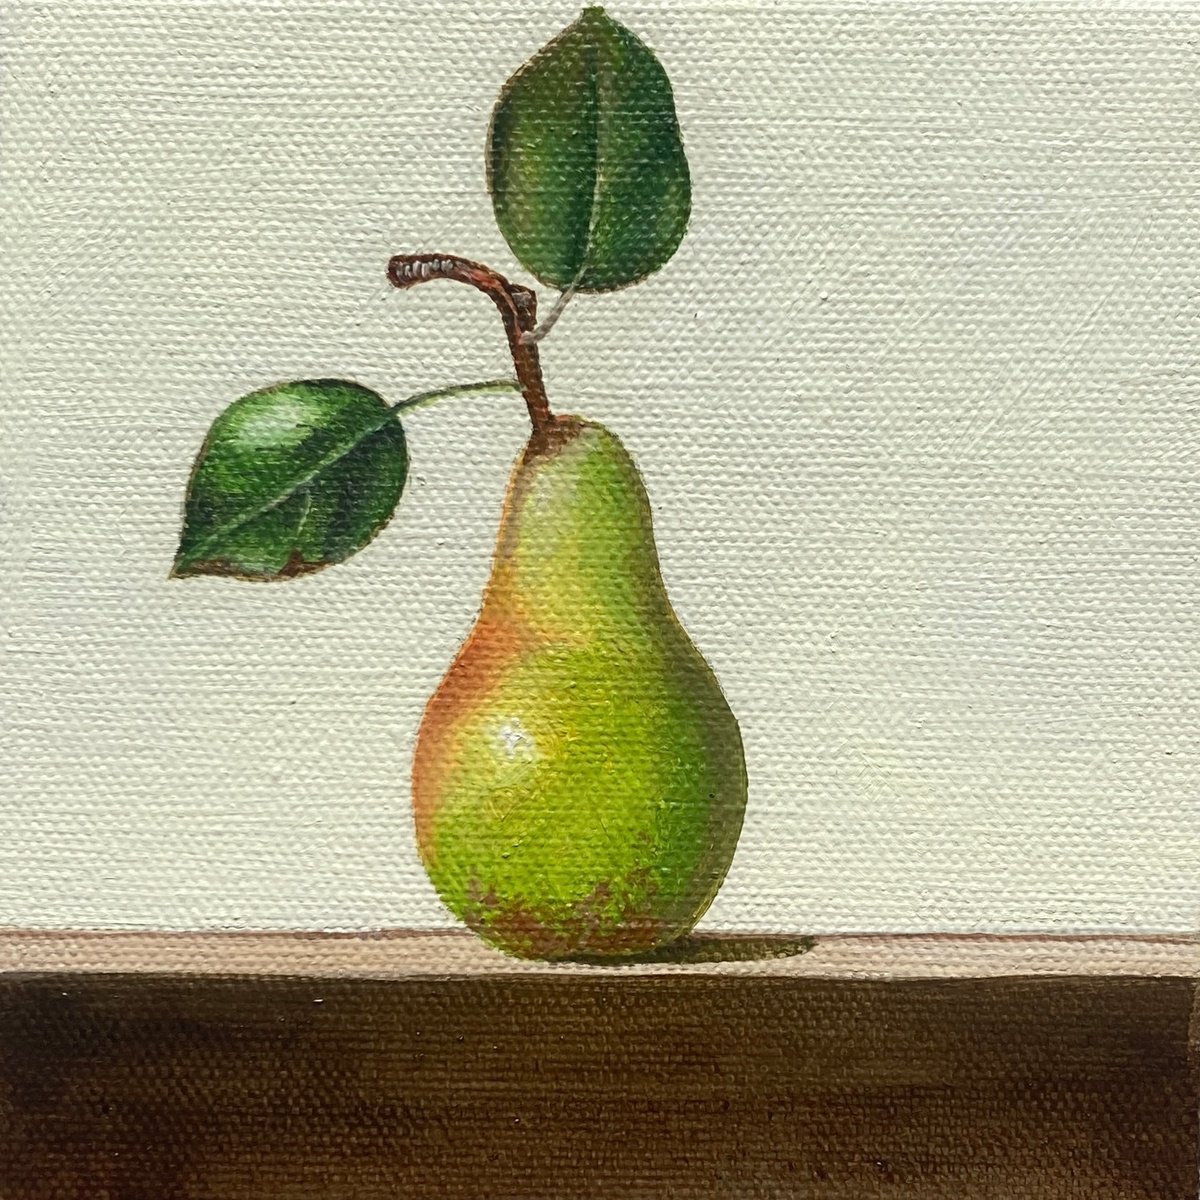 A Pear by Priyanka Singh